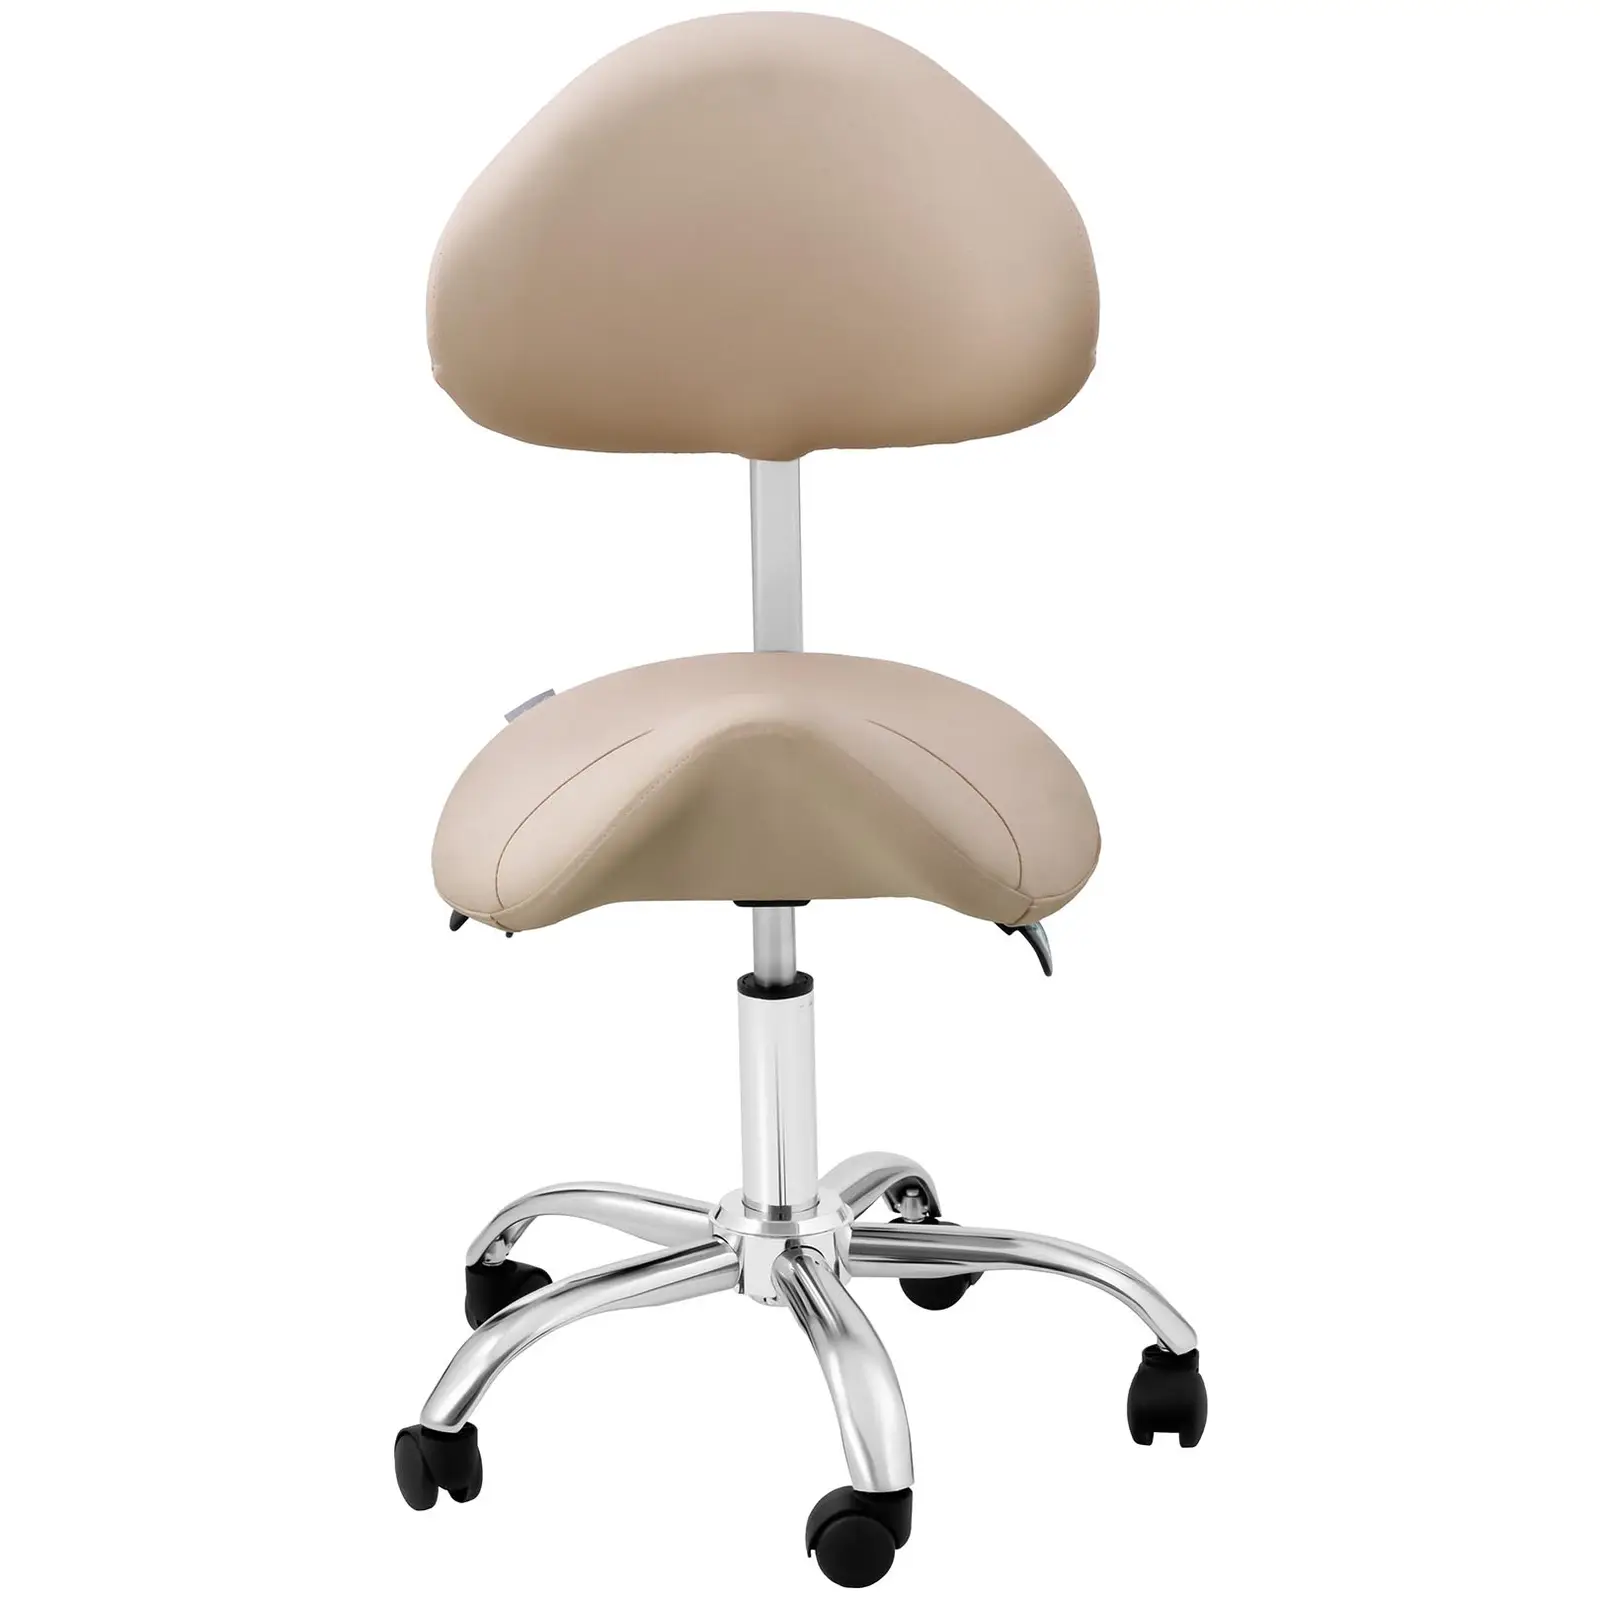 Scaun cu șa - spătar și înălțime scaun reglabile pe înălțime - 55 - 69 cm - 150 kg - Cream, Silver